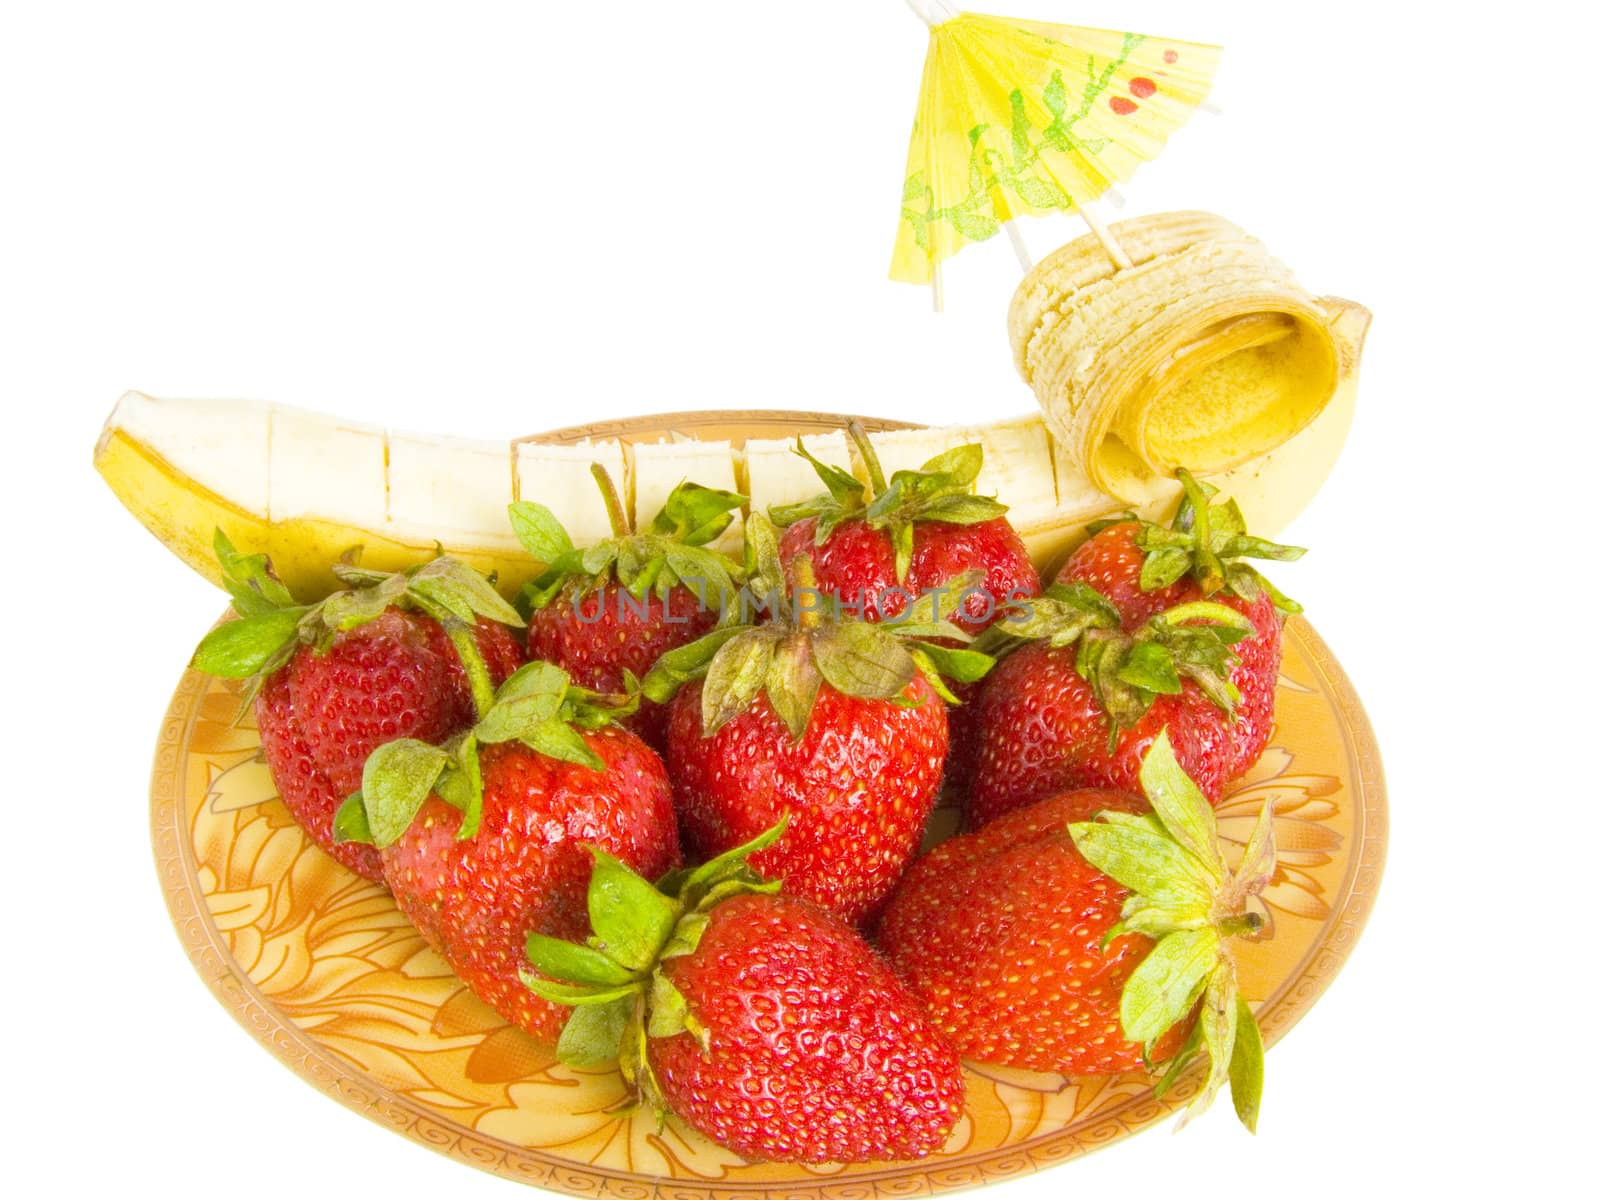 strawberry dessert by sosha